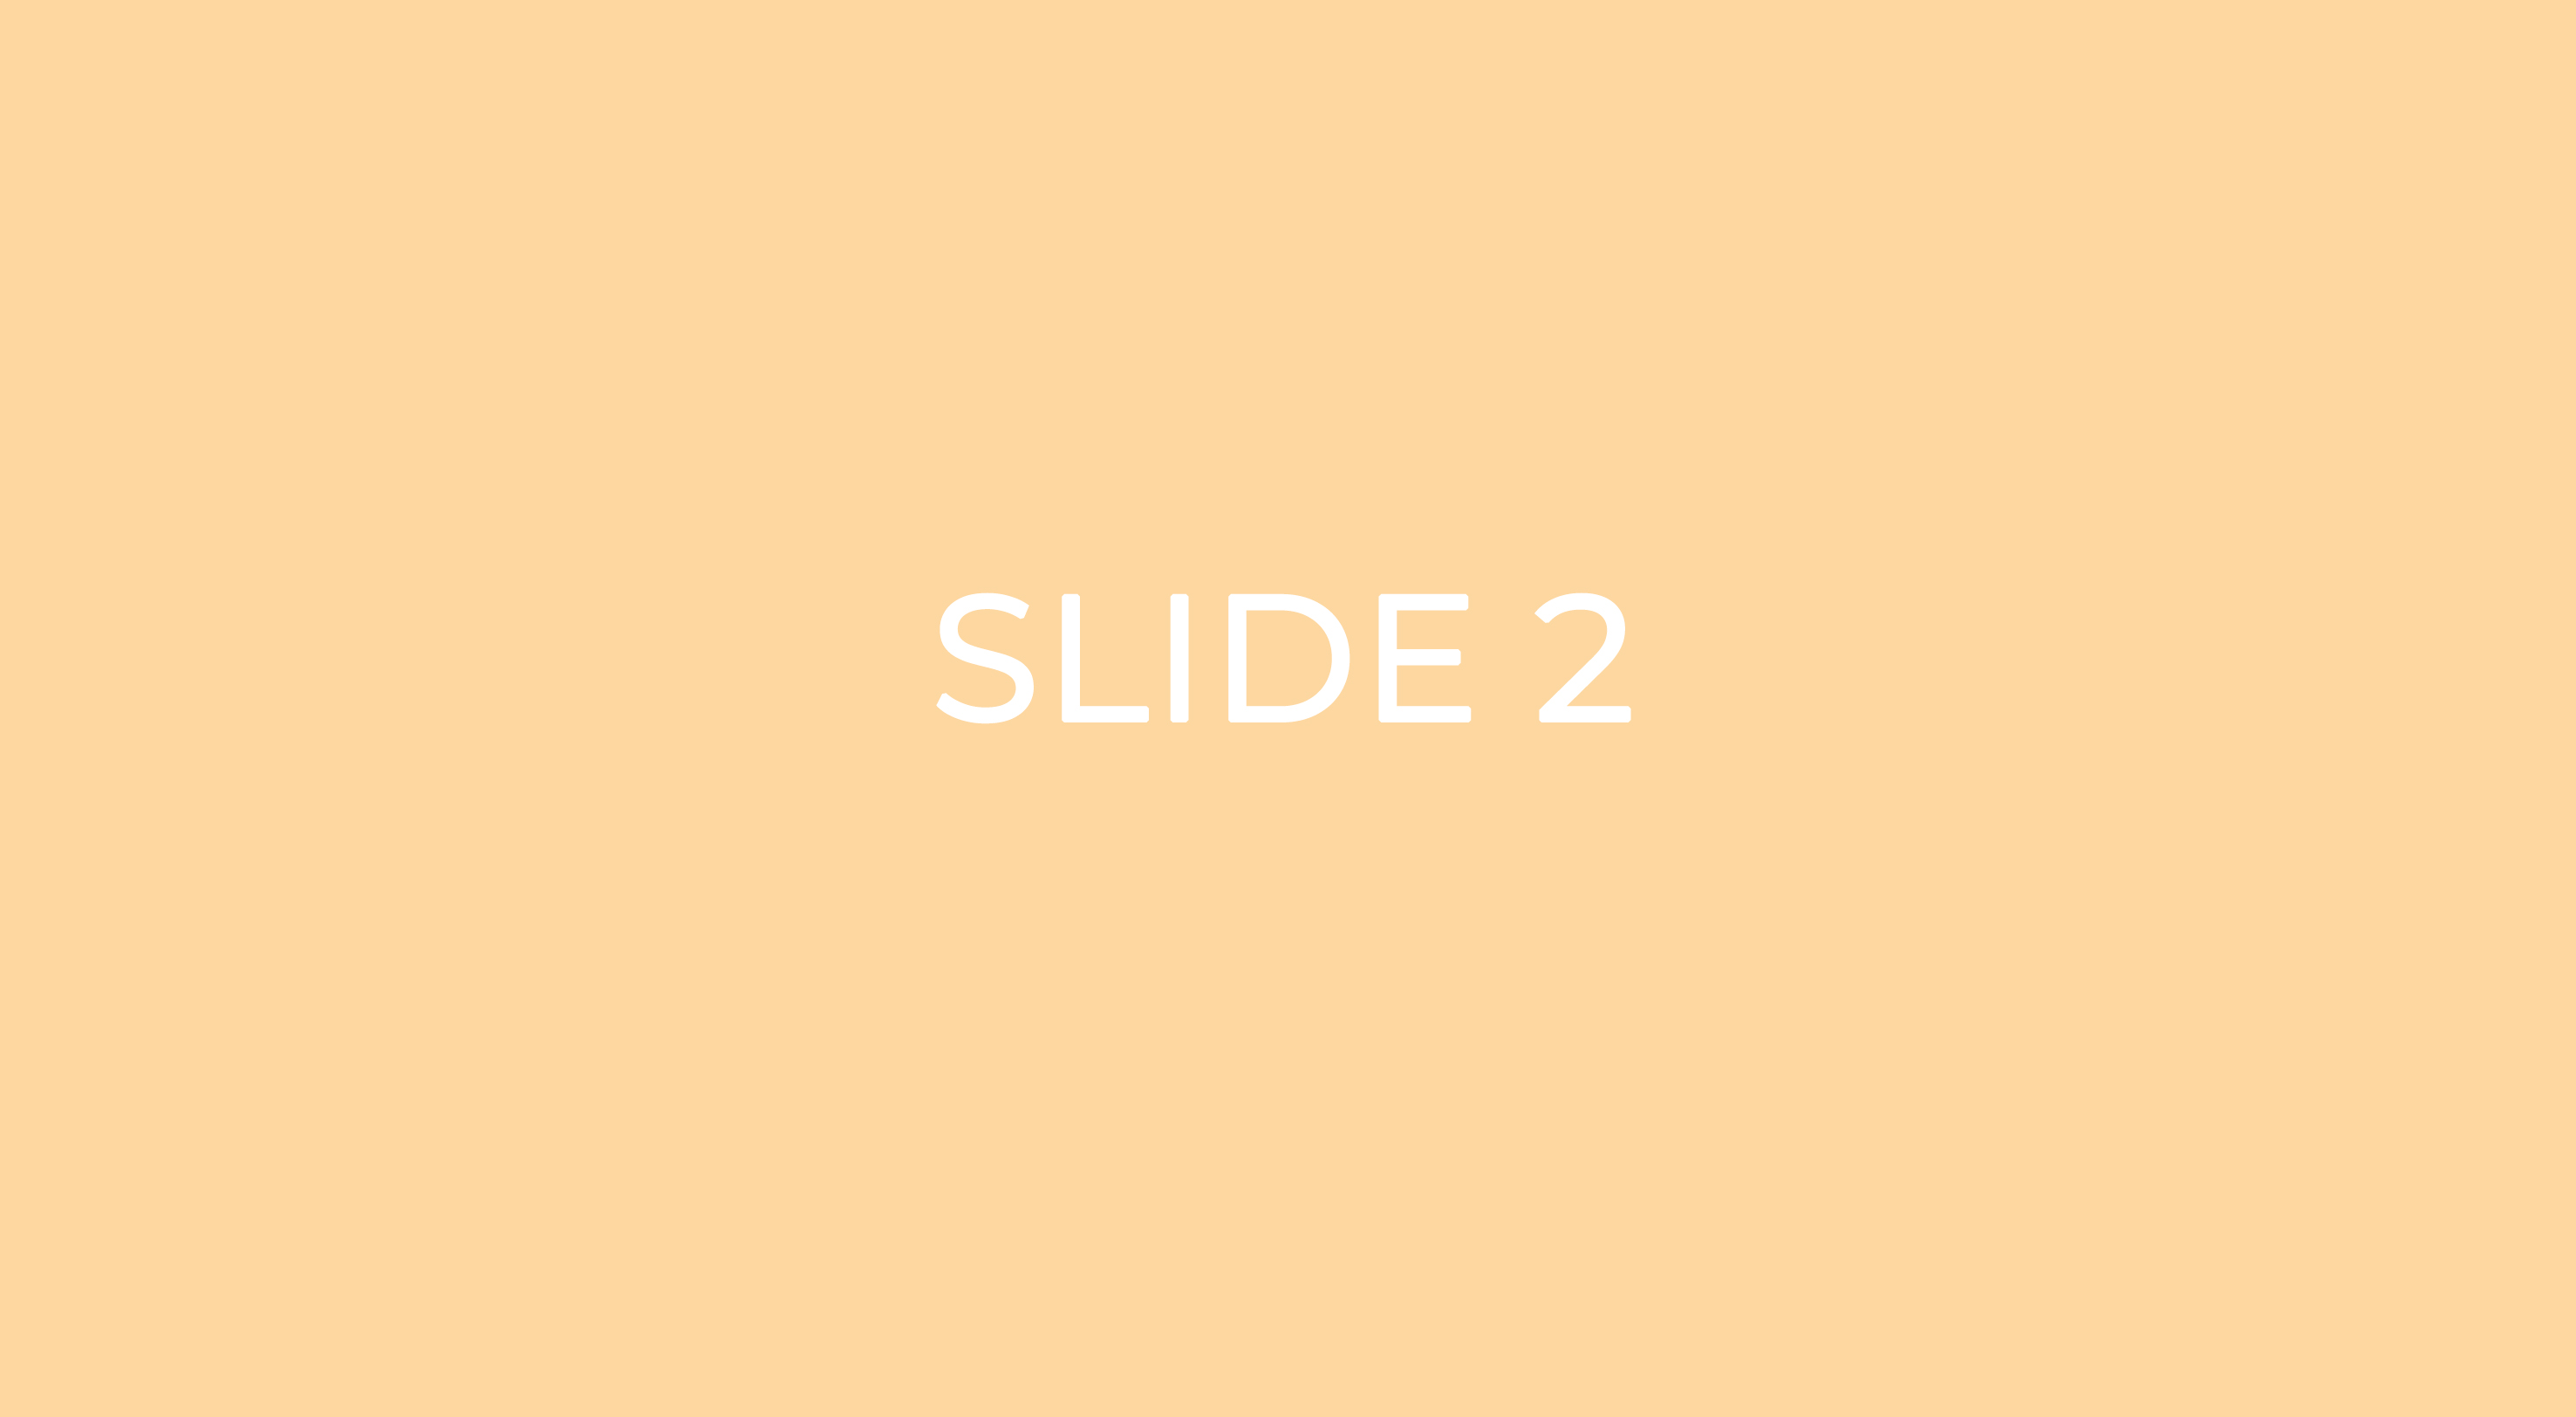 slide2